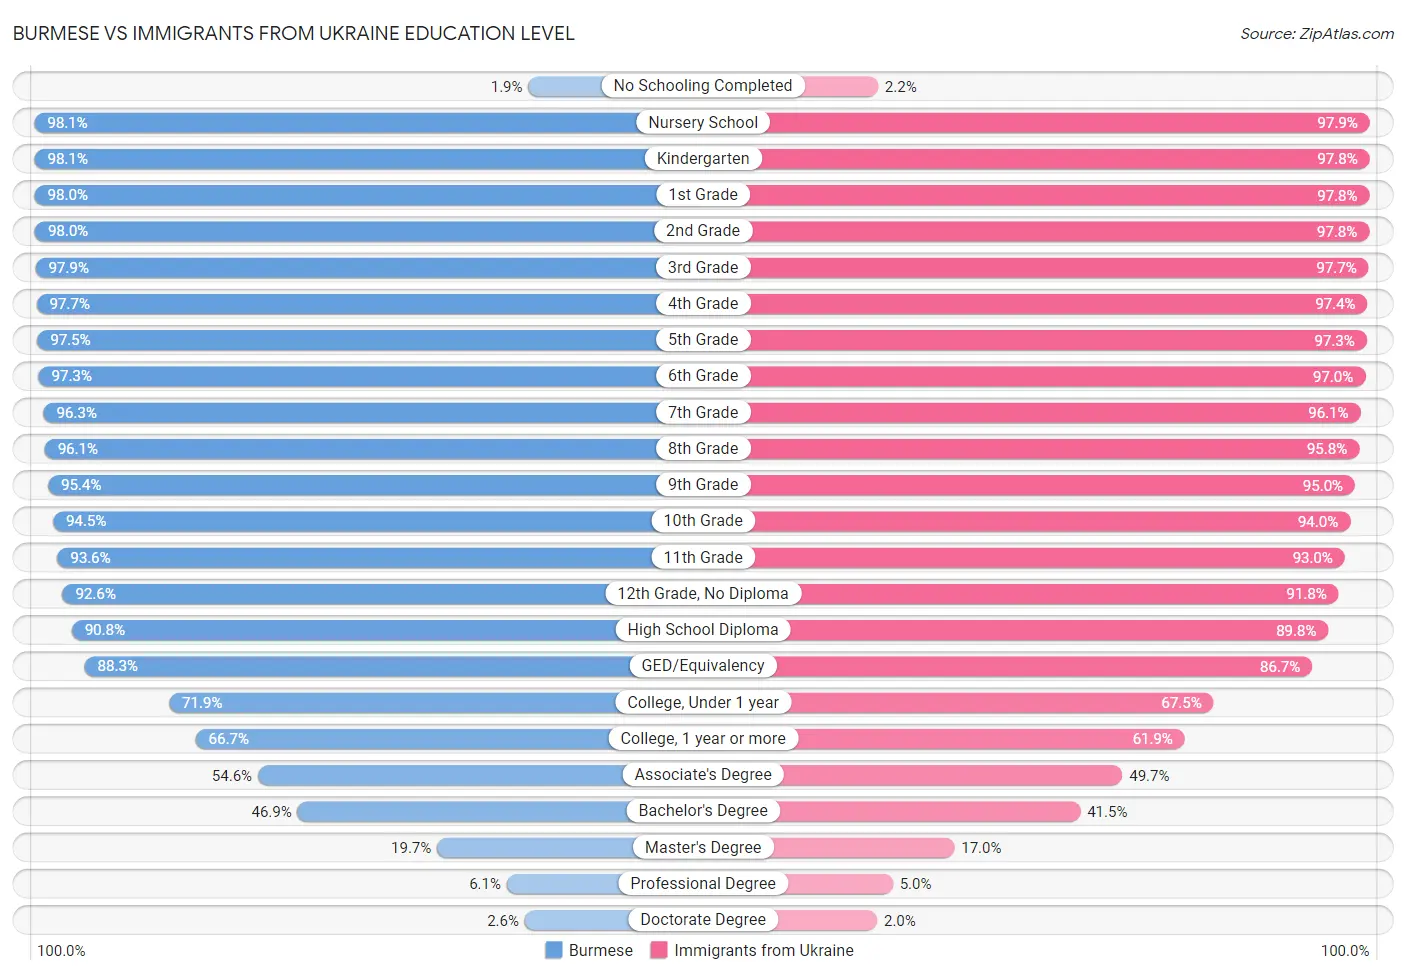 Burmese vs Immigrants from Ukraine Education Level